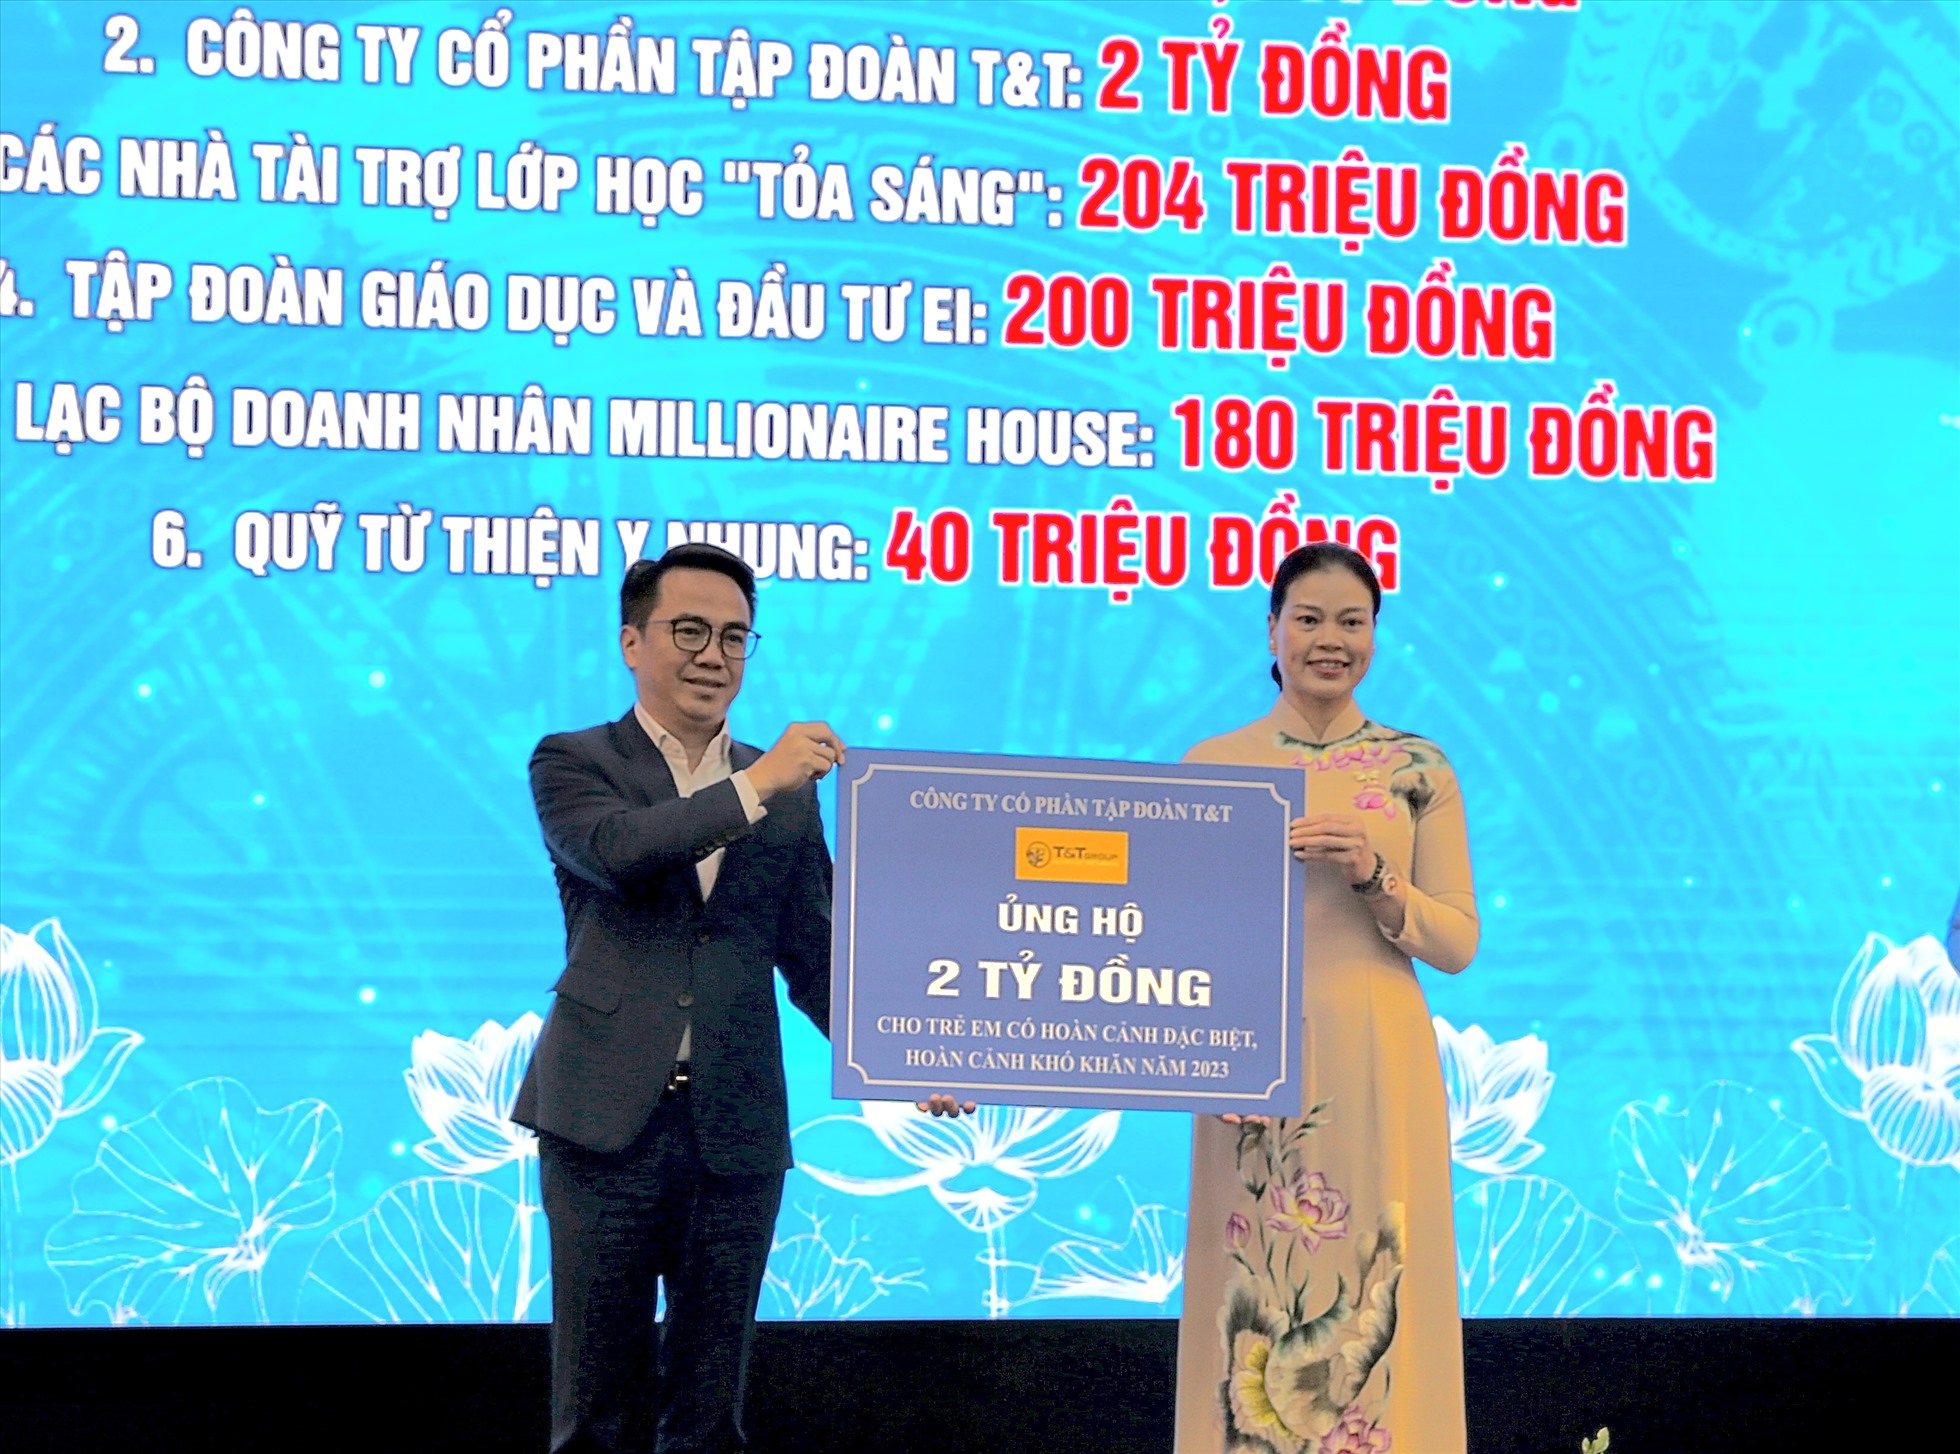 Đại diện lãnh đạo Tập đoàn T&T Group (trái) trao ủng hộ 2 tỷ đồng cho Trung tâm công tác xã hội và Quỹ bảo trợ trẻ em Hà Nội nhằm hỗ trợ trẻ em có hoàn cảnh đặc biệt, hoàn cảnh khó khăn. Ảnh: T&T Group